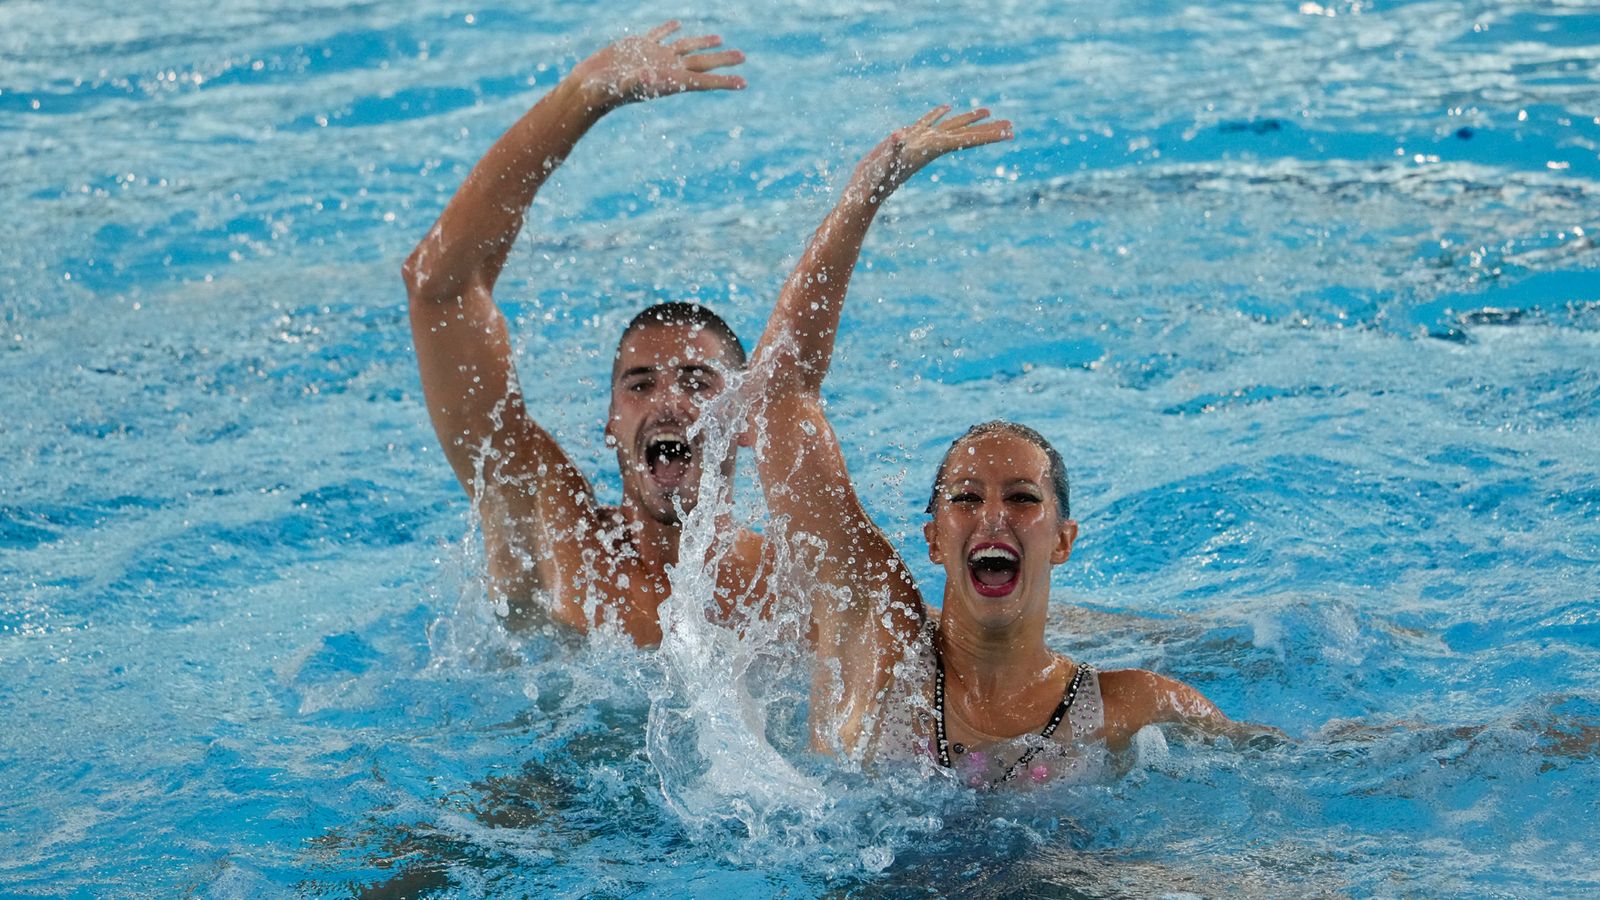 Художественное плавание впервые открыто для мужчин на Олимпийских играх в рамках программы «Эволюция к инклюзивности» |  Новости мира